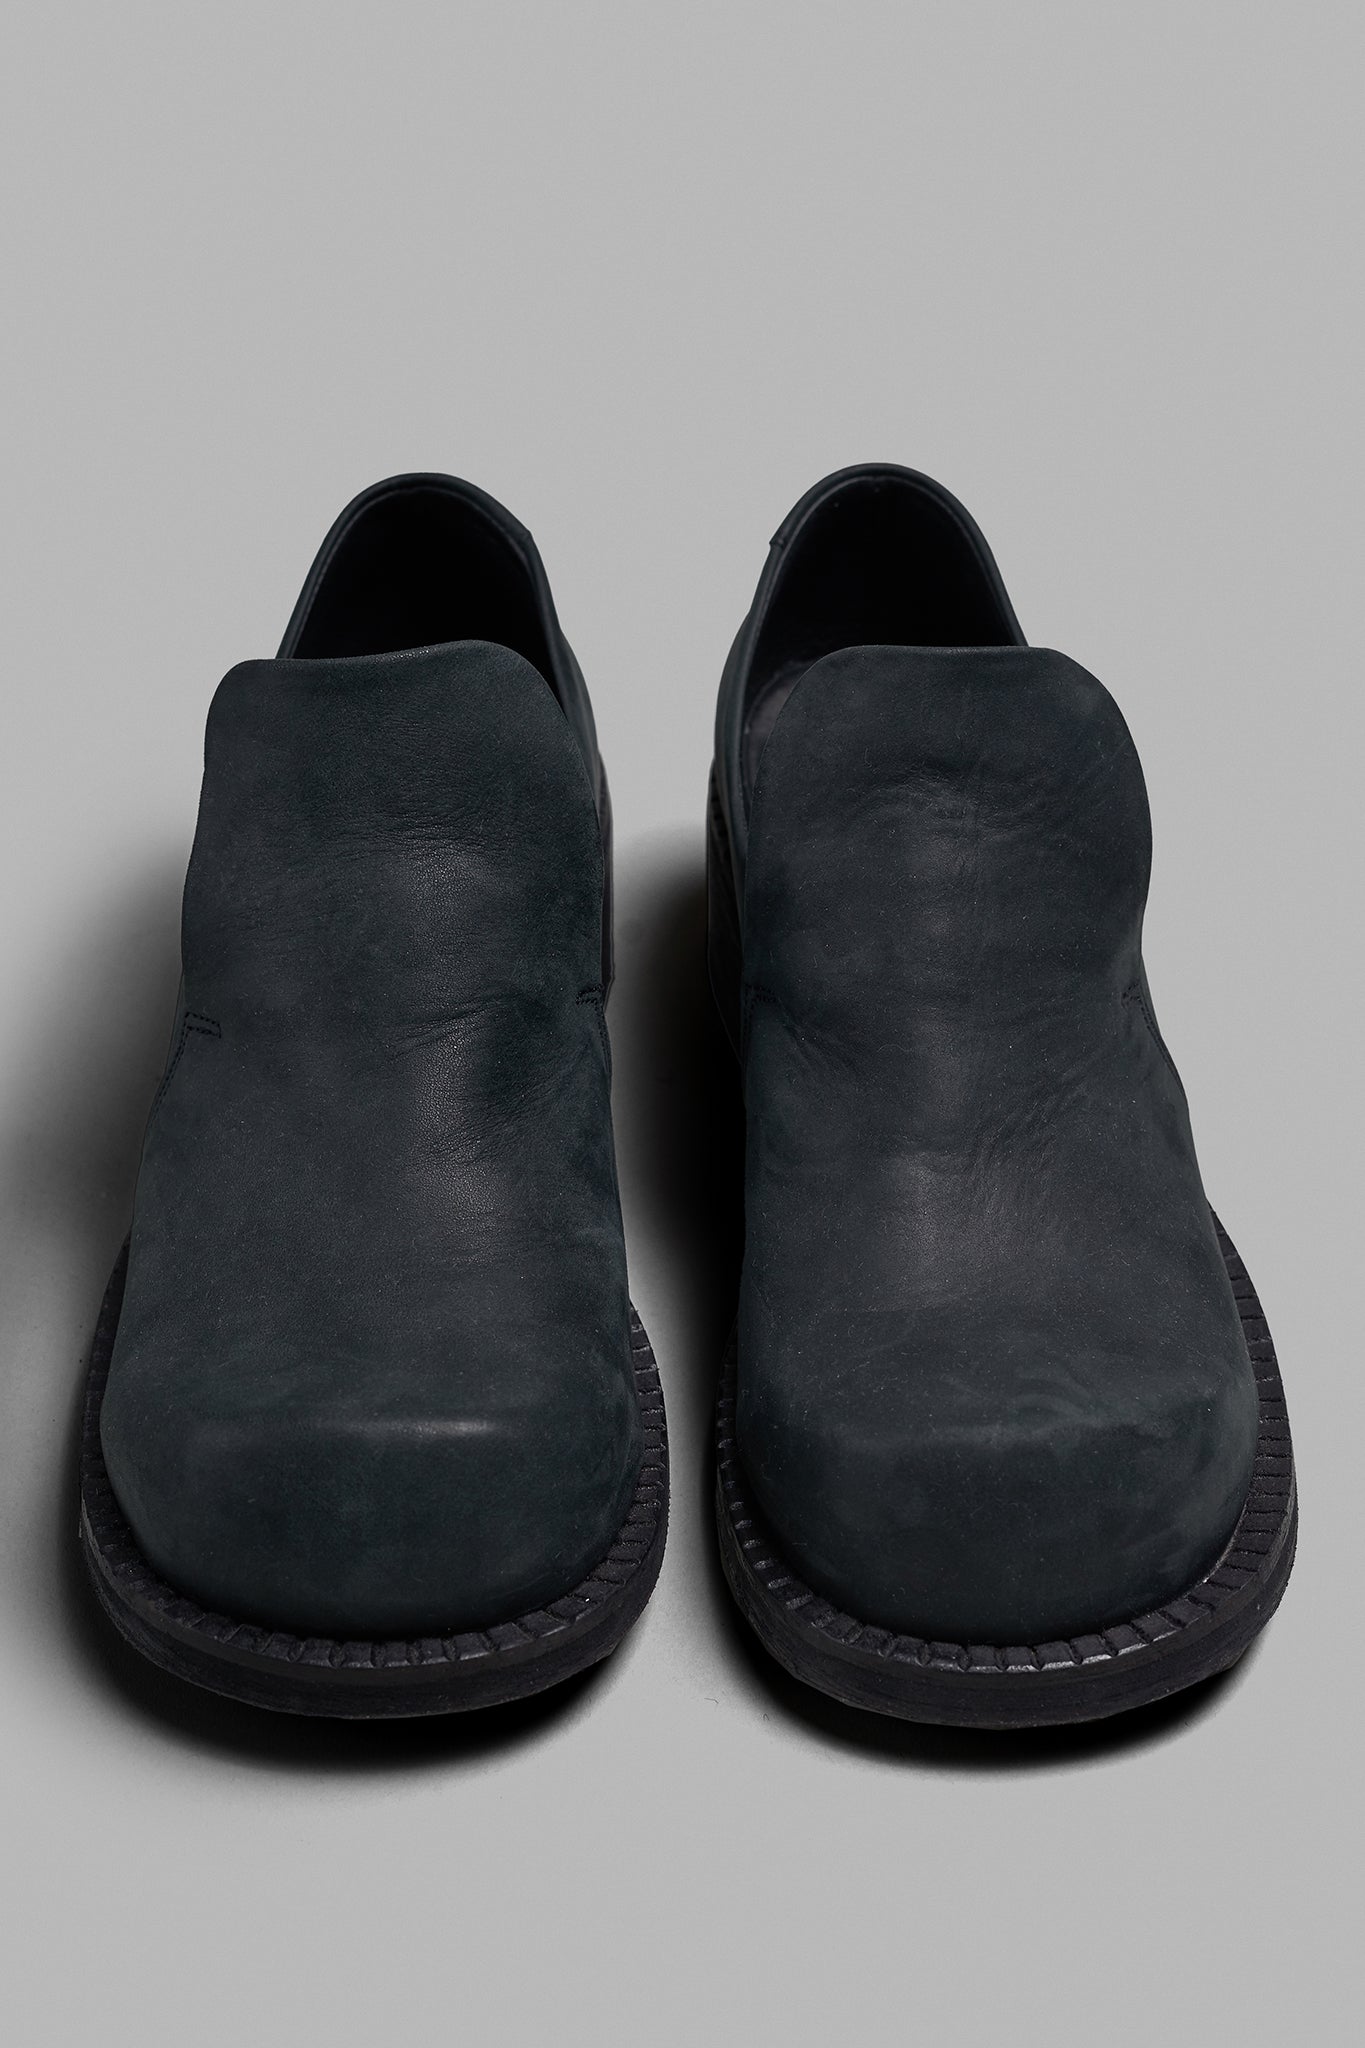 Wide Toe Loafer - Old Black